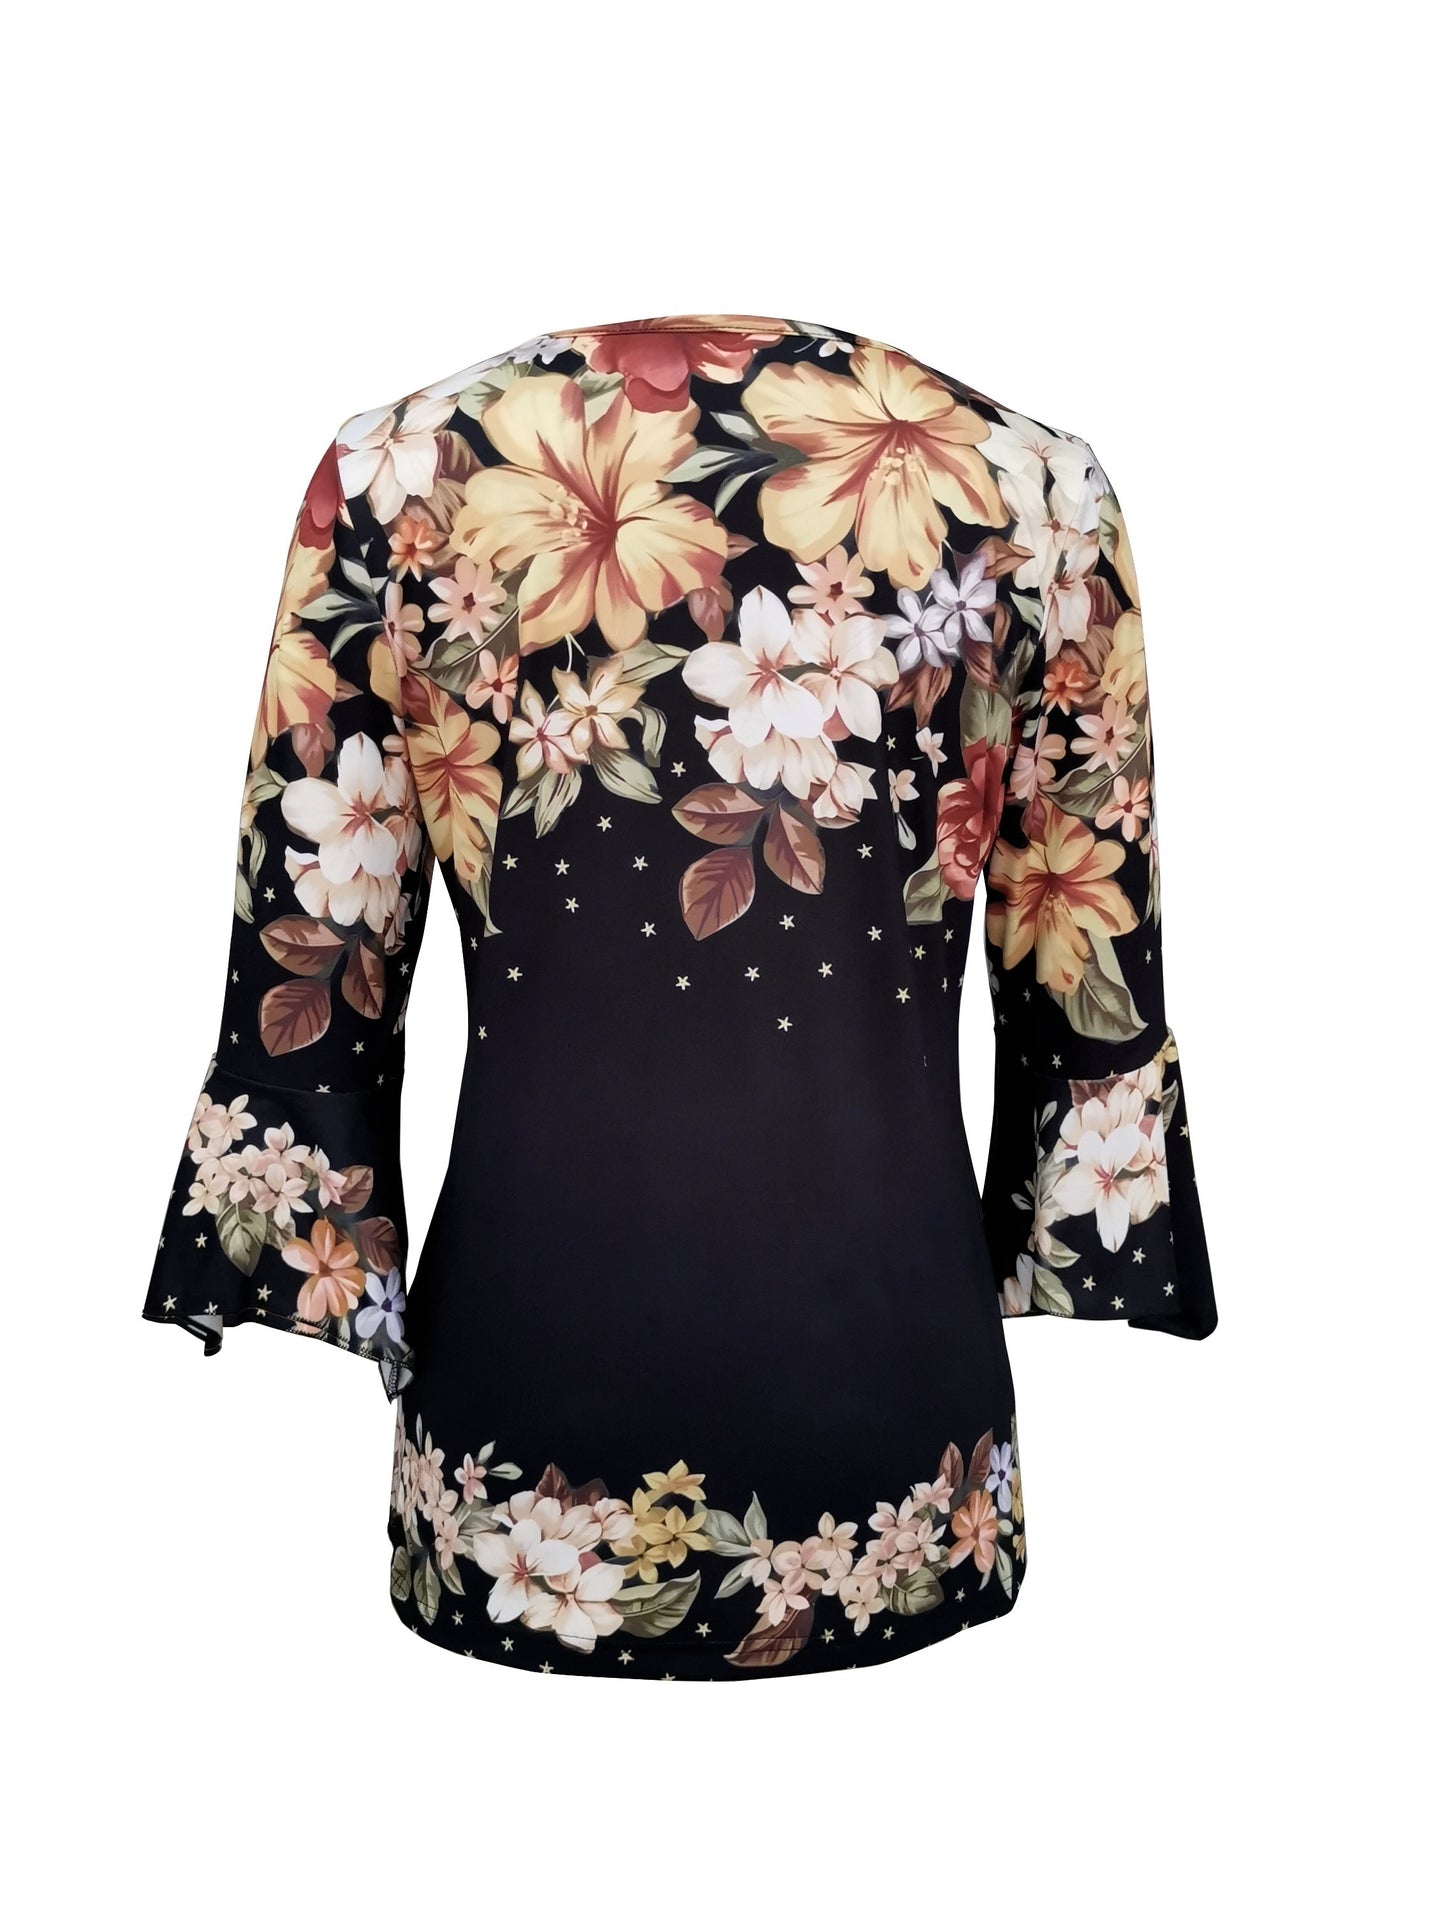 T-Shirt Mit Blumendruck, Gekerbtem Ausschnitt, Elegantes Oberteil